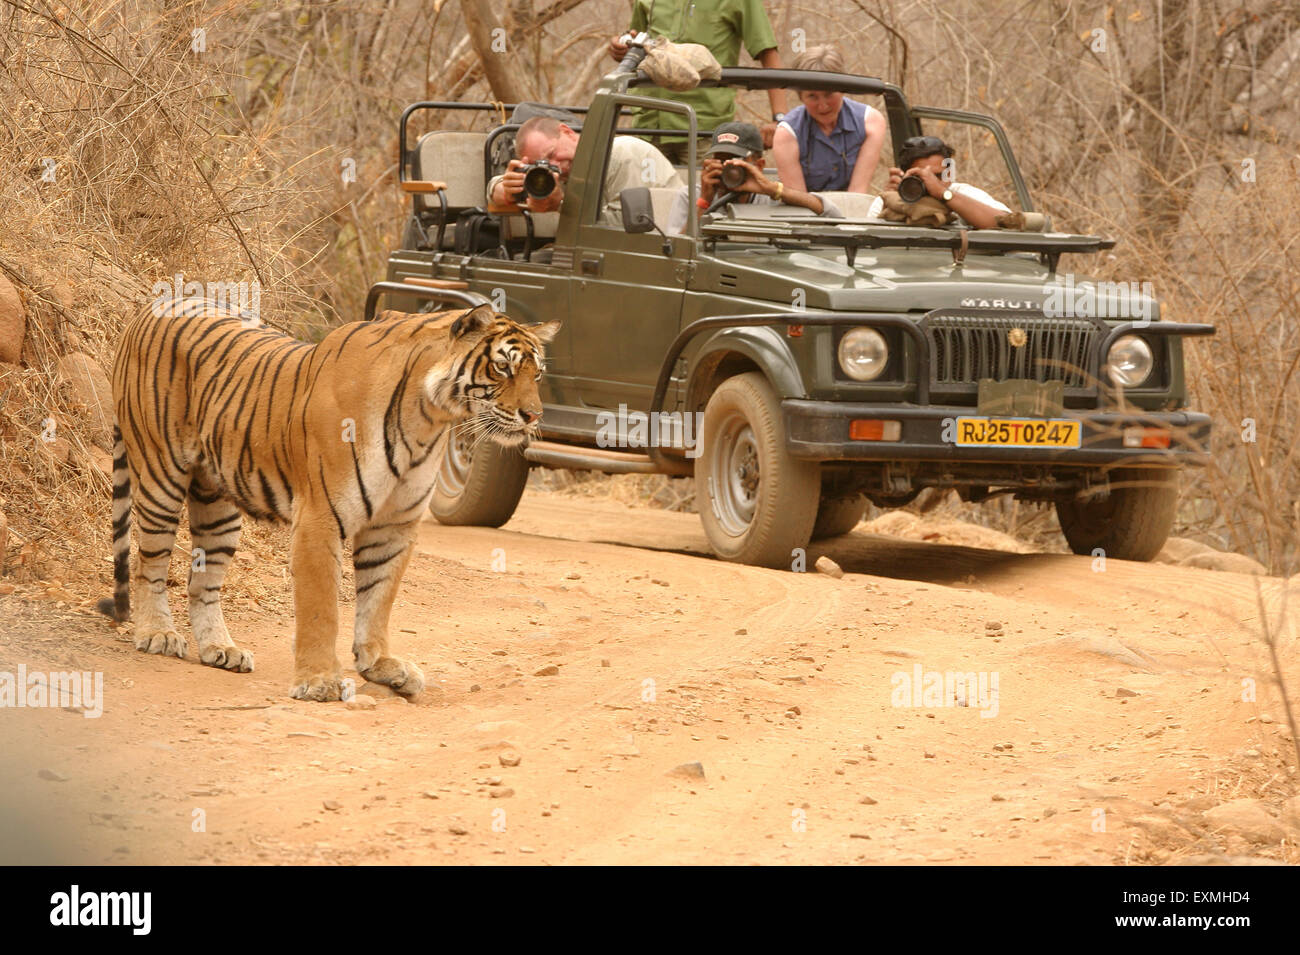 Machali Tigre Panthera tigris des touristes de la région du lac faisant la photographie Dans le parc national de la réserve de tigres de Ranthambore Sawai Madhopur Rajasthan Inde Asie Banque D'Images